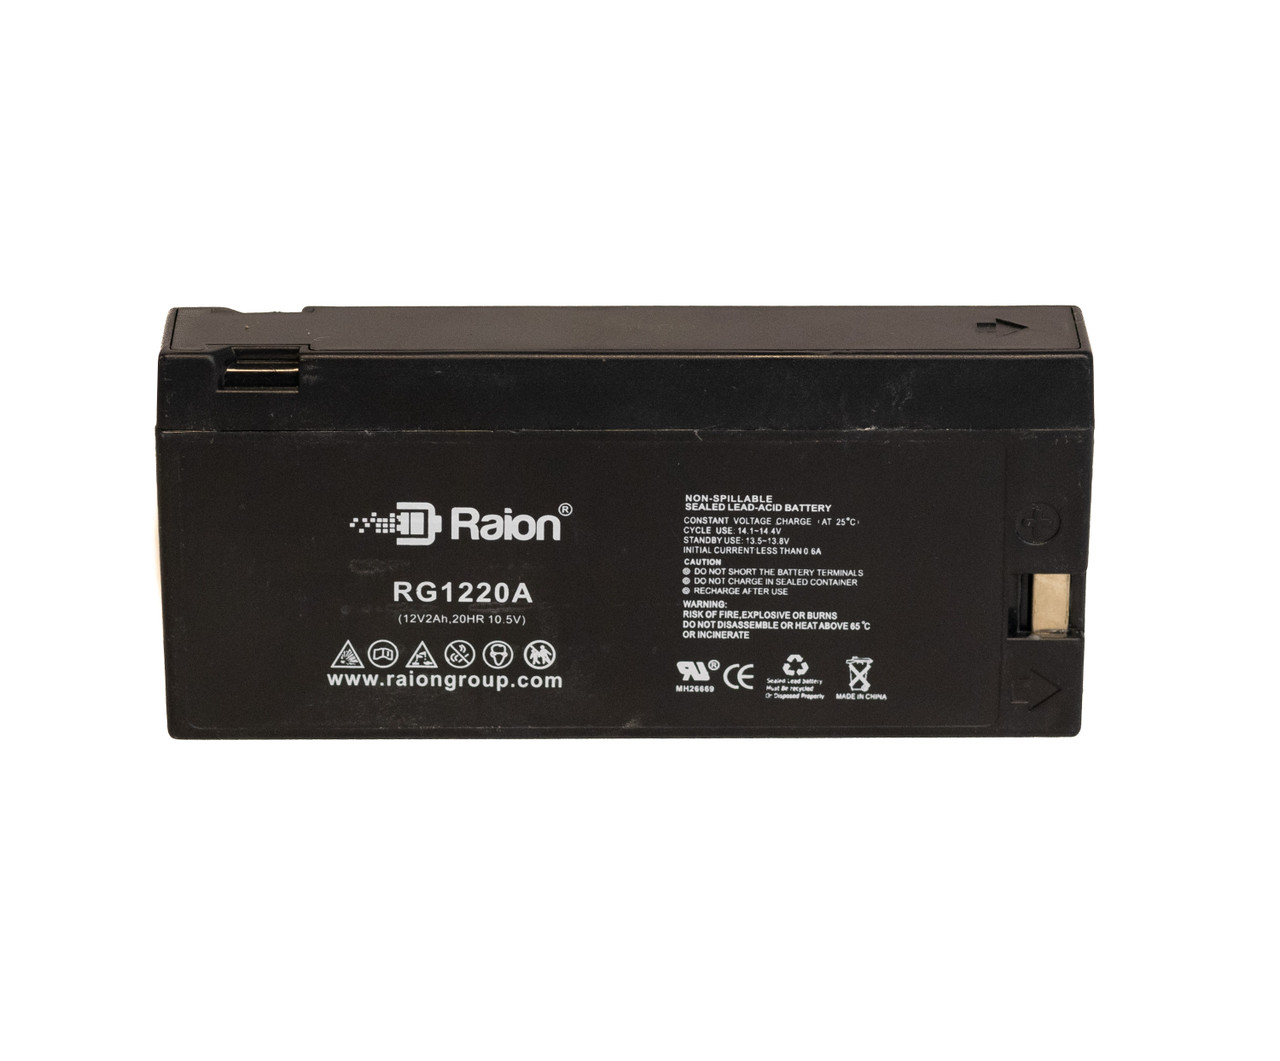 Raion Power RG1220A SLA Battery for Magnavox CVM-315